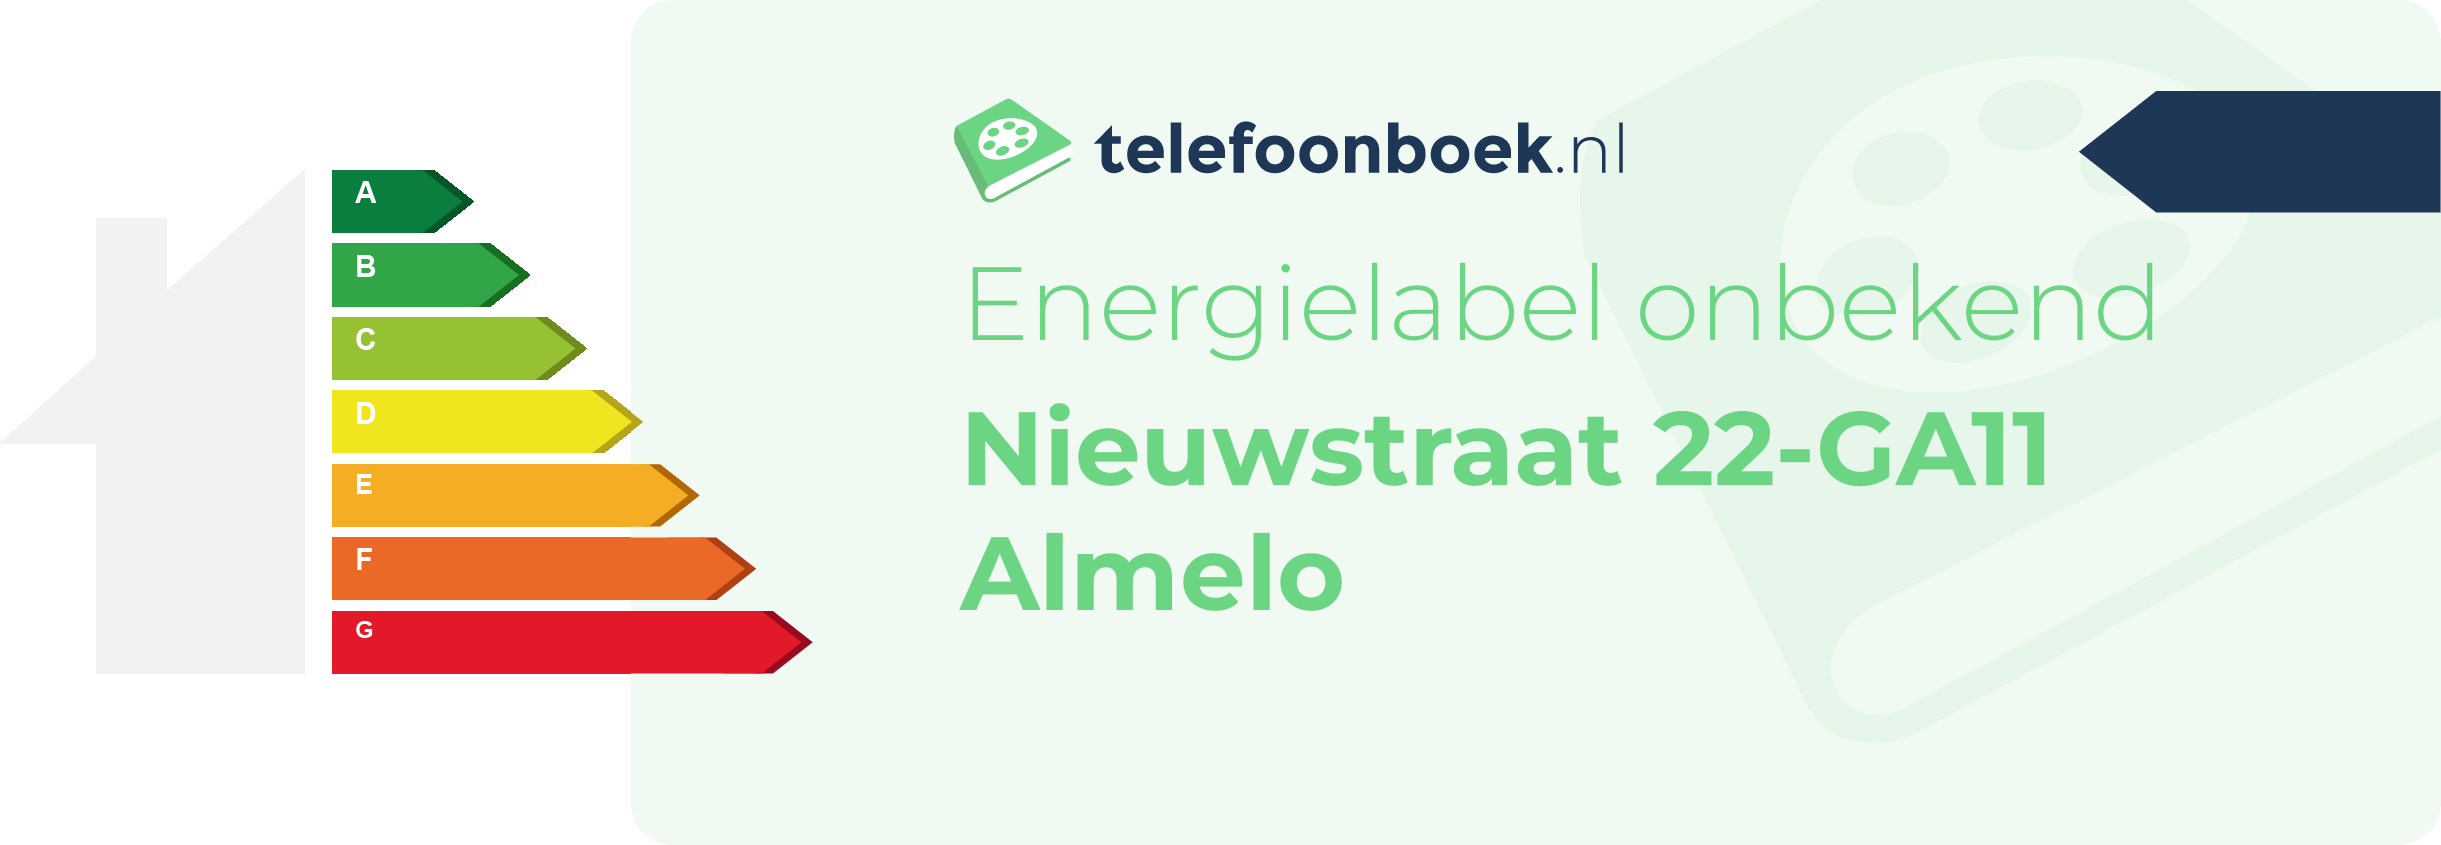 Energielabel Nieuwstraat 22-GA11 Almelo